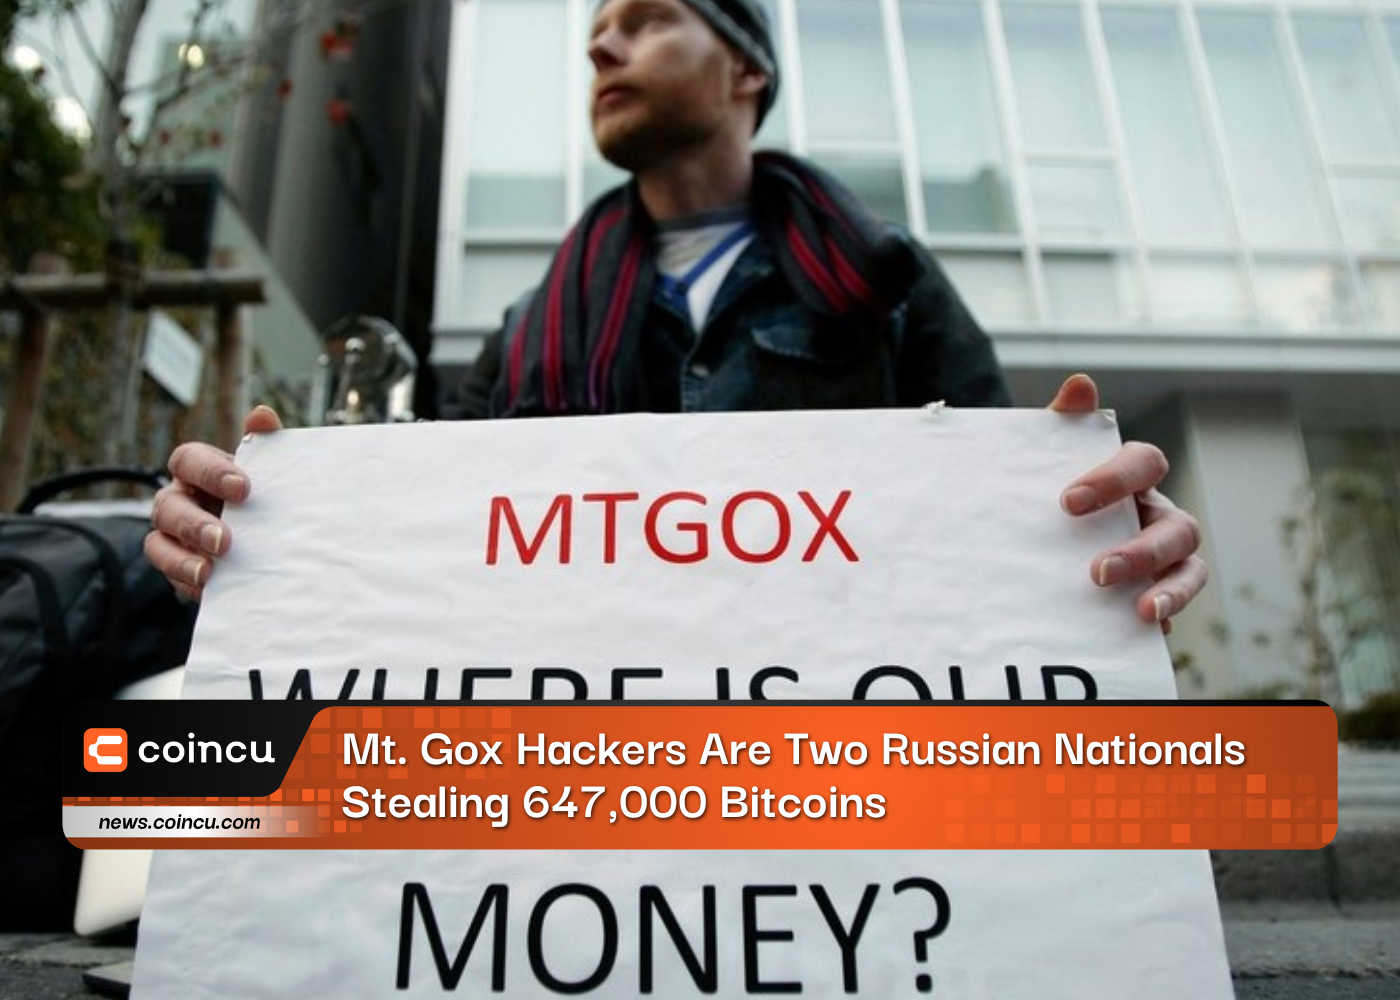 माउंट गोक्स हैकर दो रूसी नागरिक हैं जो 647,000 बिटकॉइन चुरा रहे हैं